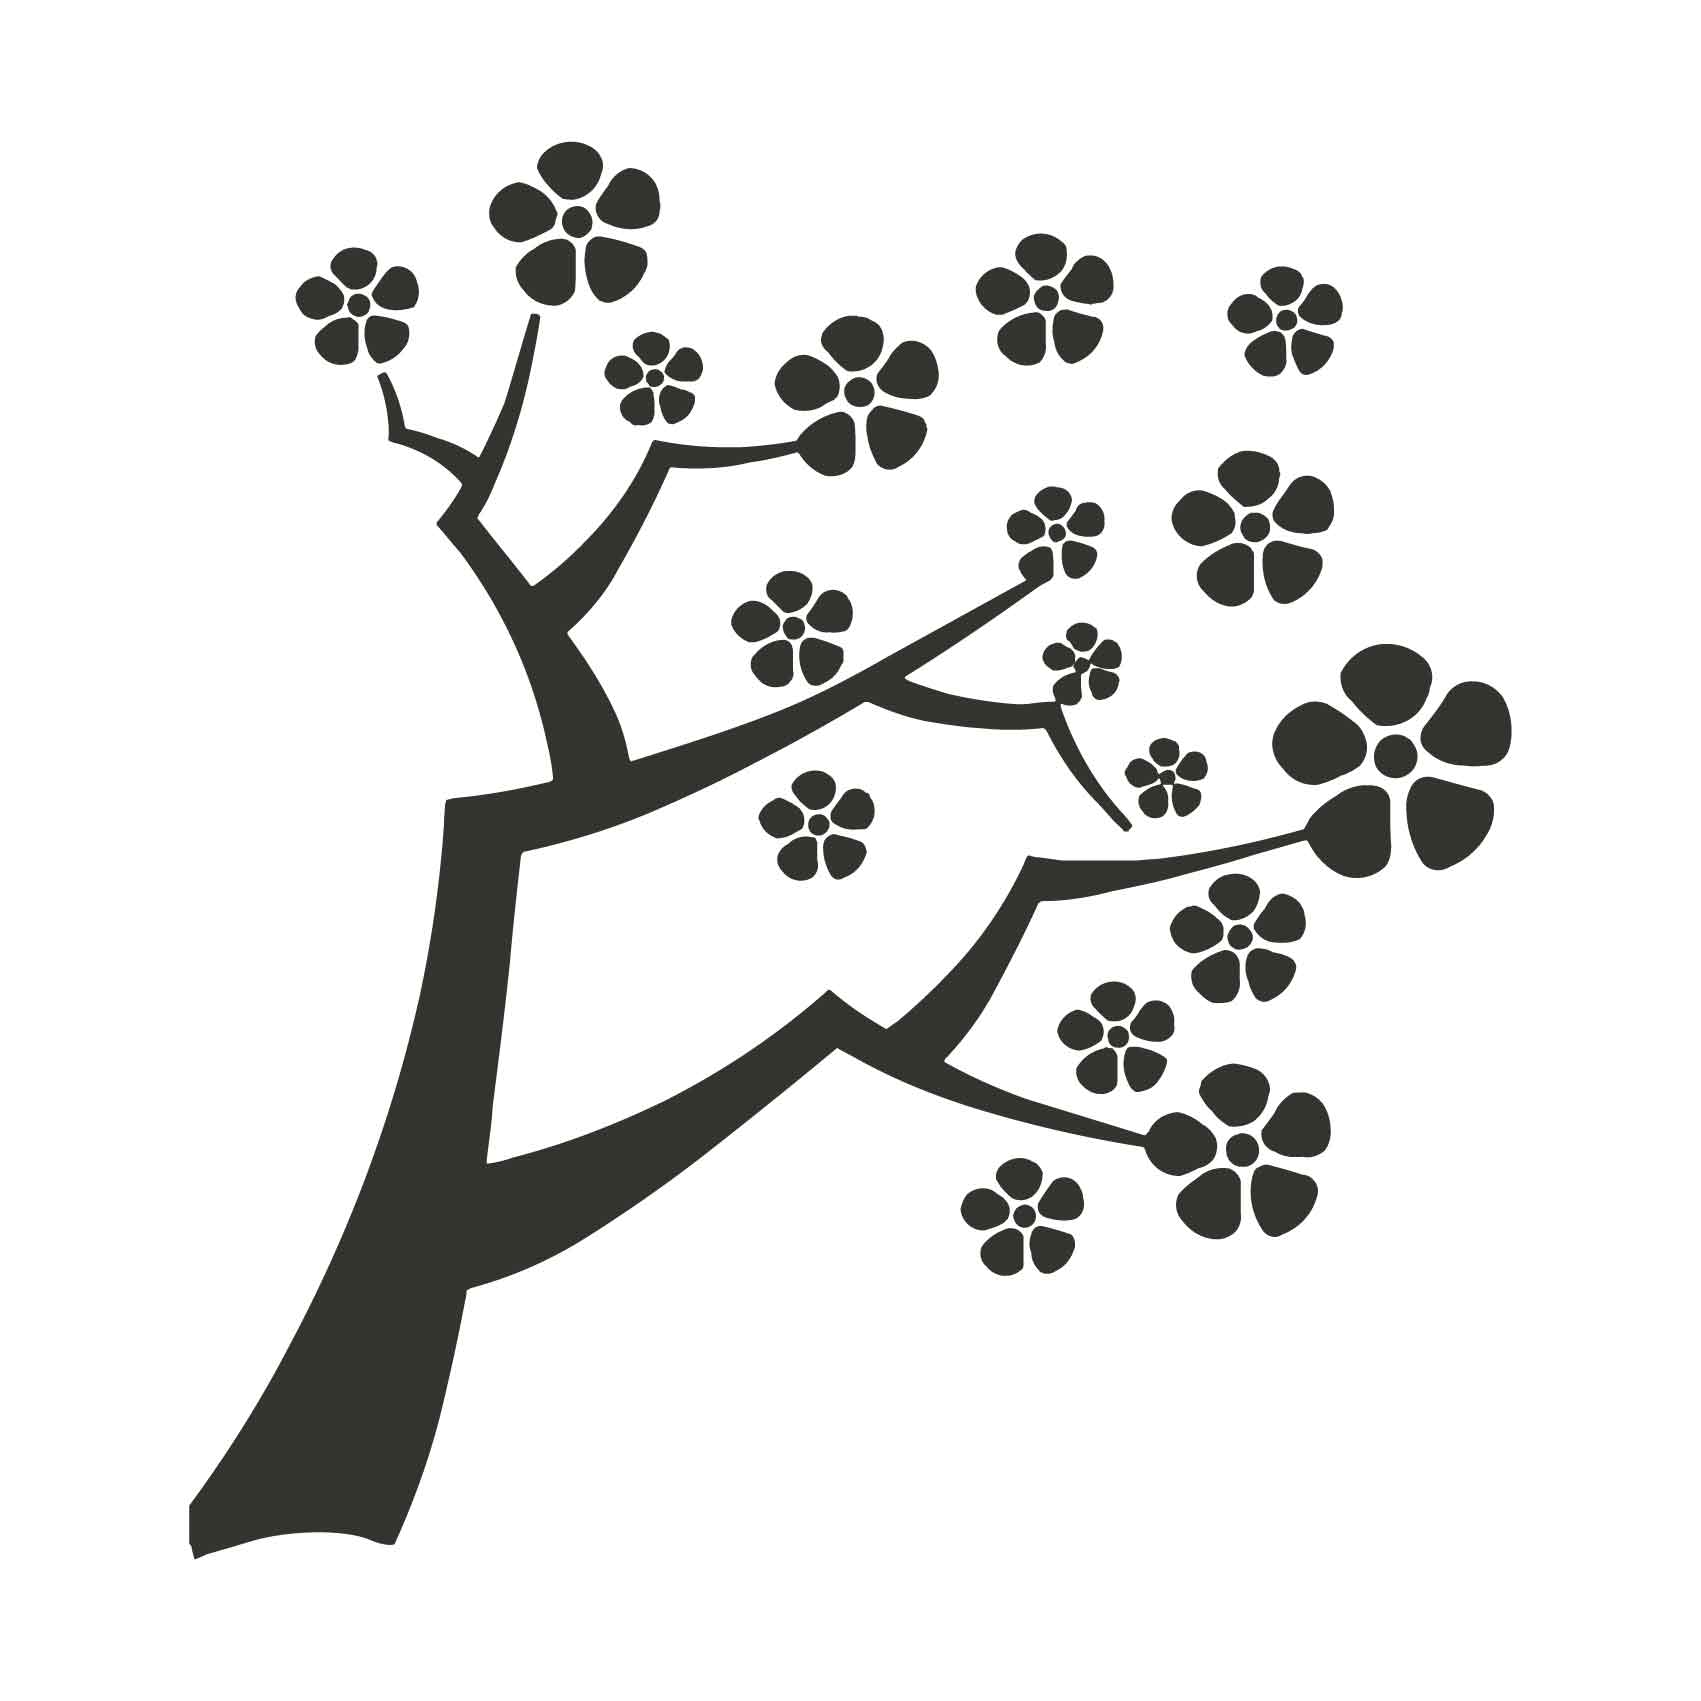 stickers-branche-arbre-ref4arbre-autocollant-muraux-sticker-geant-arbre-deco-branche-noir-rose-gris-vert-blanc-chambre-salon-(2)